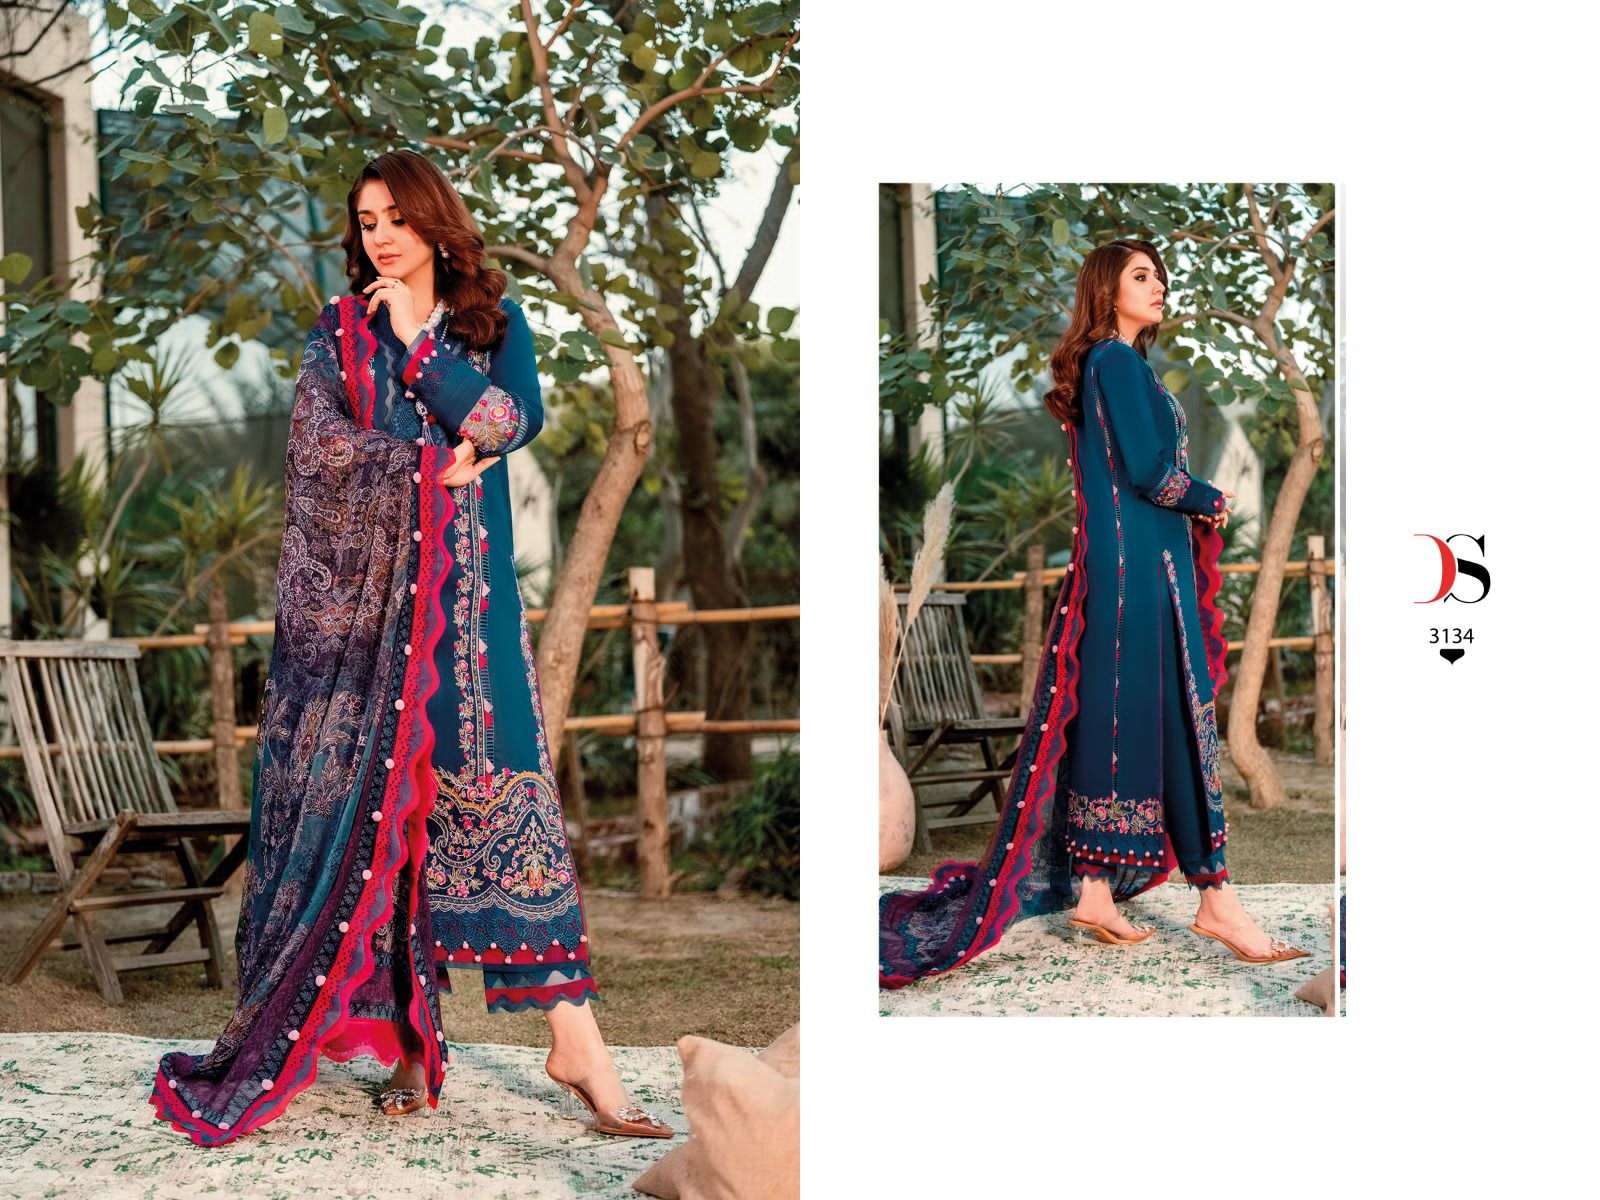 Deepsy Firdous Ombre 2 Cotton Dupatta Pakistani Suit Collection Wholesale catalog